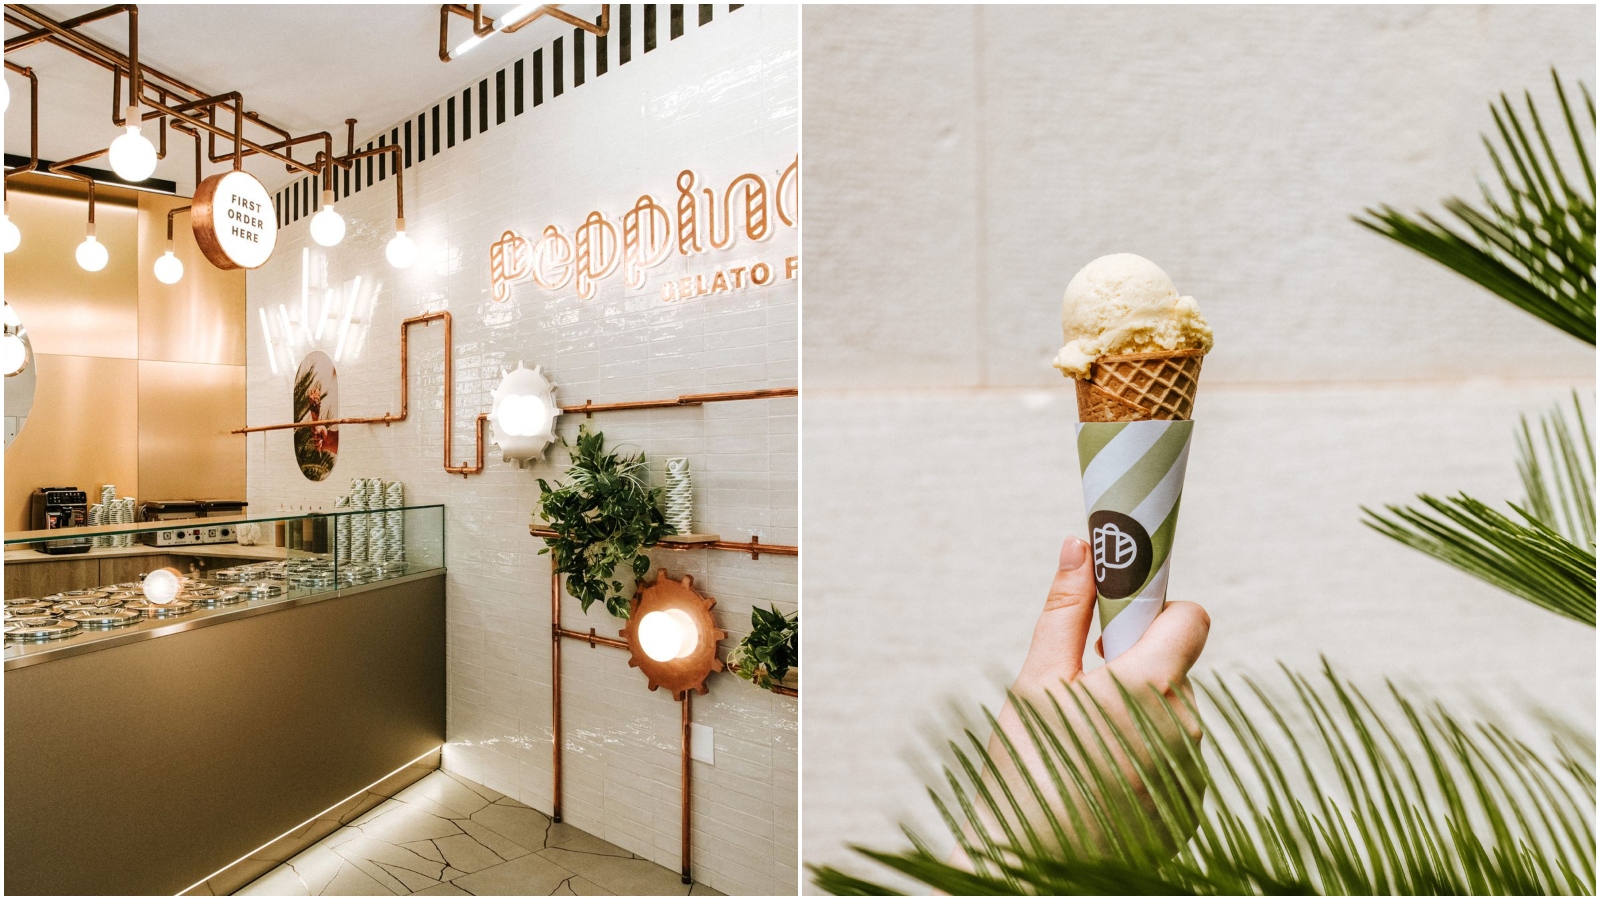 Popularna dubrovačka slastičarnica ima novi izgled. Kažu da tamo možete pojesti najbolji sladoled u Gradu